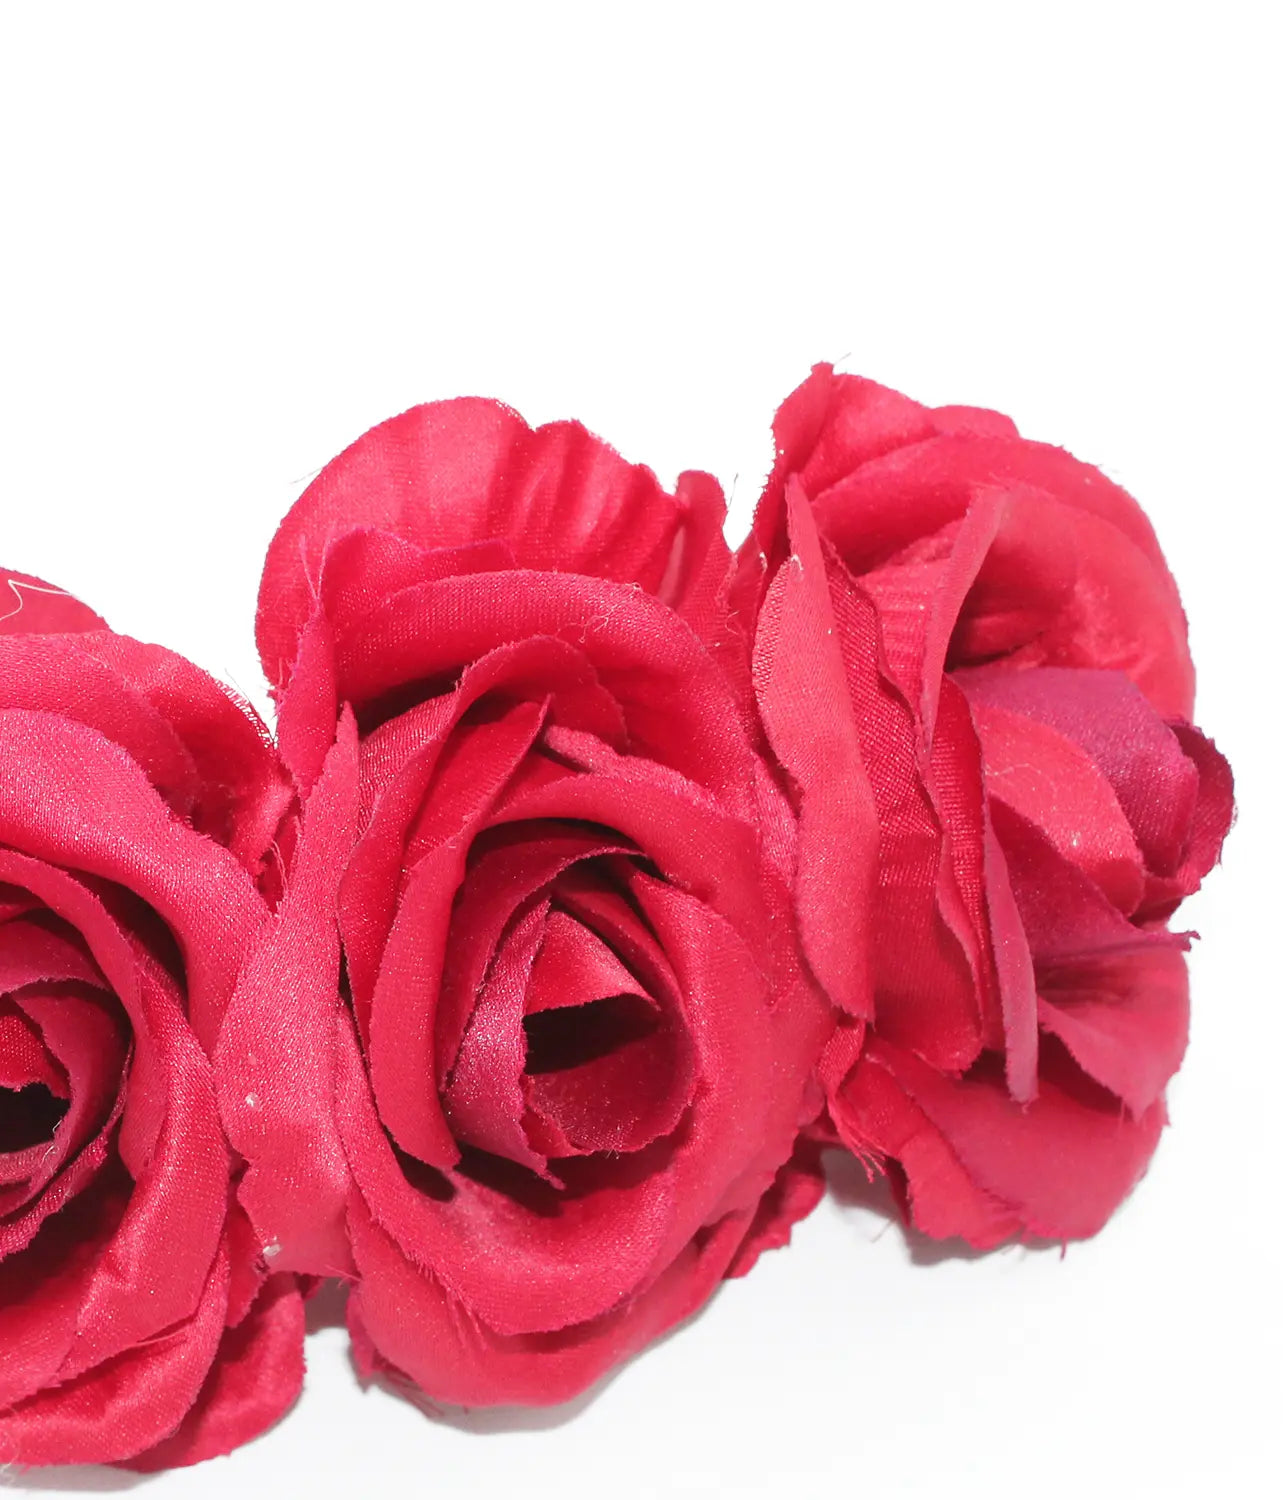 Corona de 4 rosas para vestirse de flamenca en color rojo. El complemento de flamenca que necesitas. Detalle